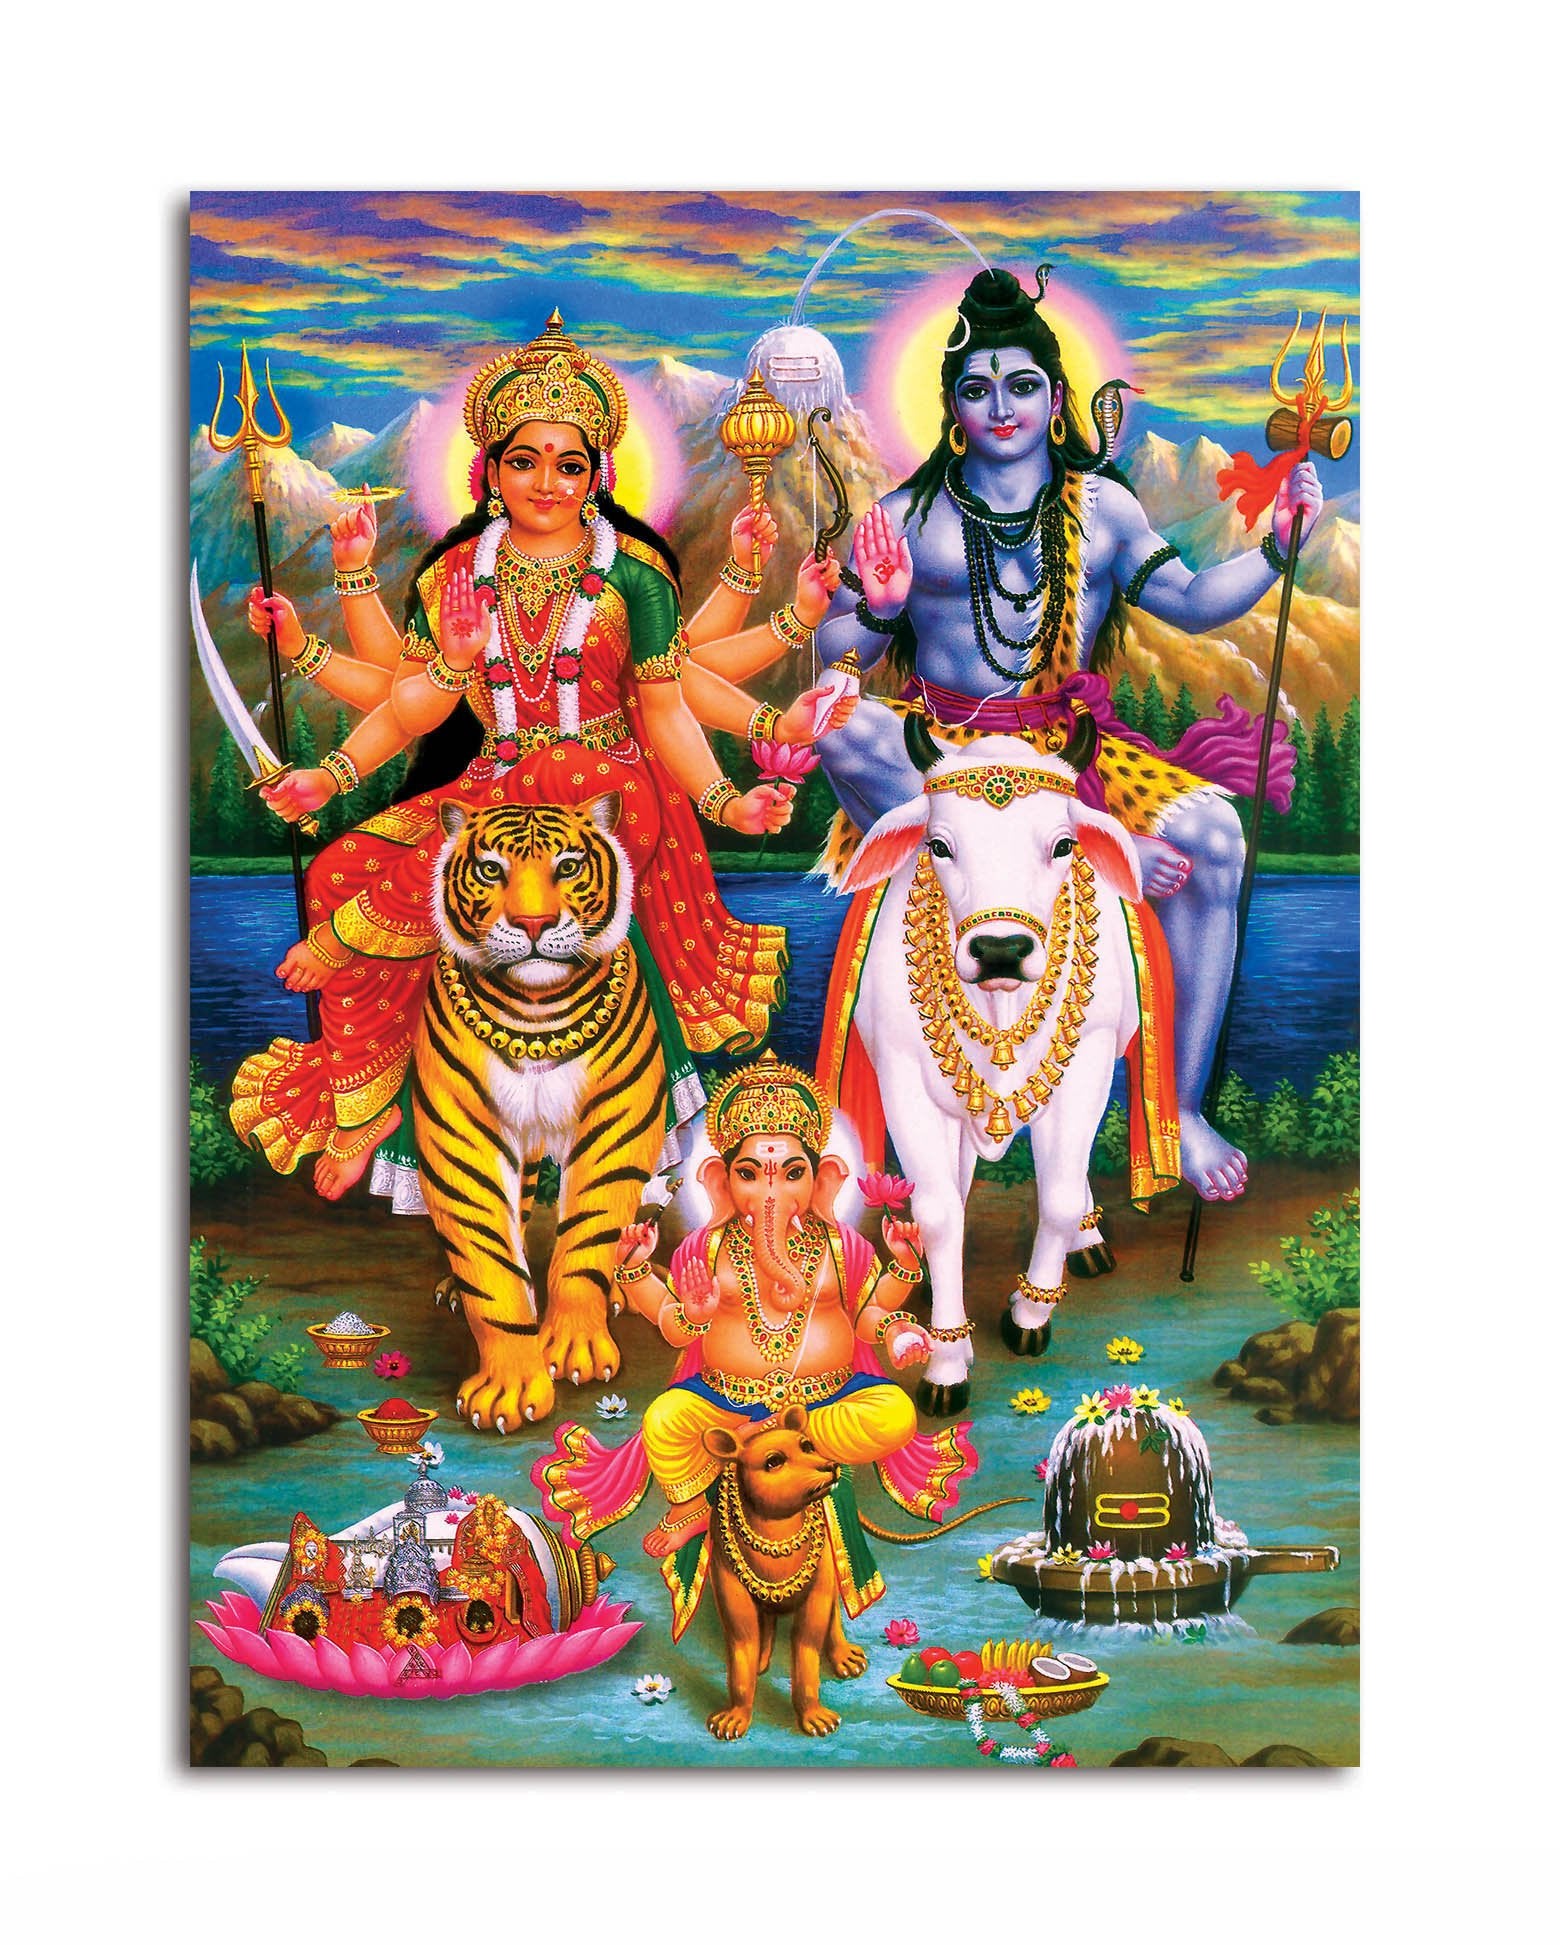 Lord Shiva with Maa Durga